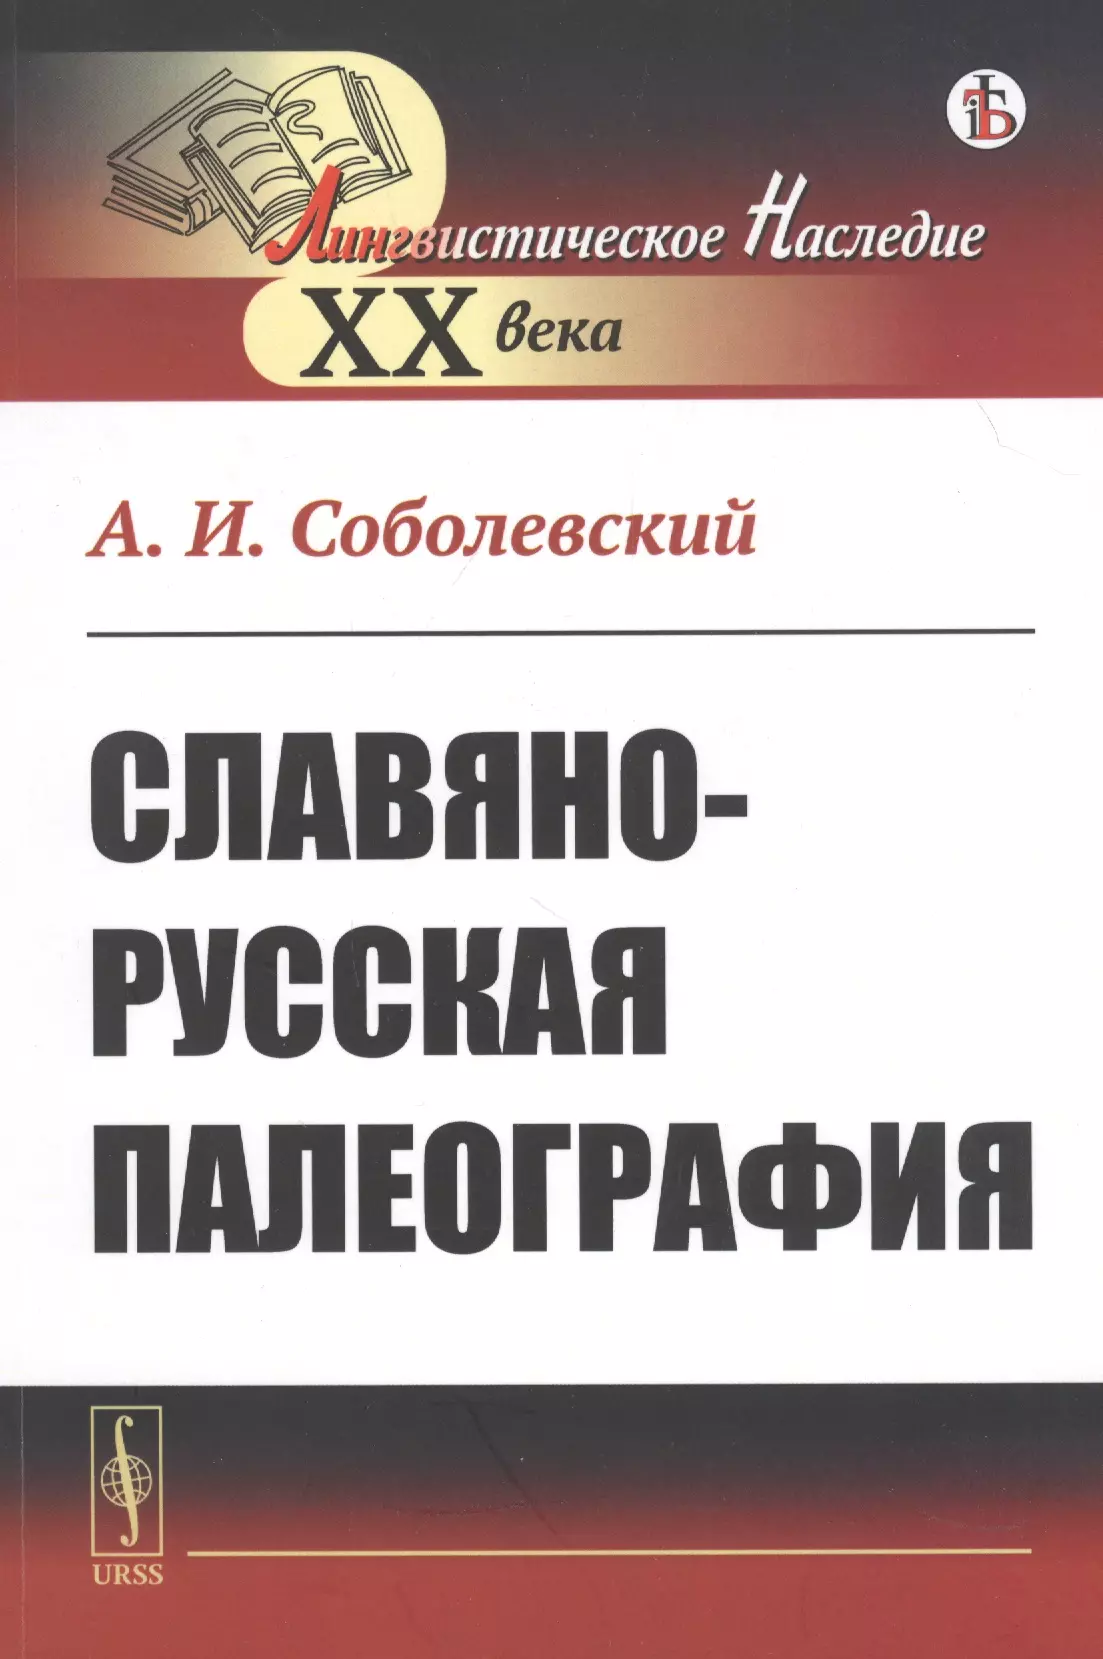  - Славяно-русская палеография